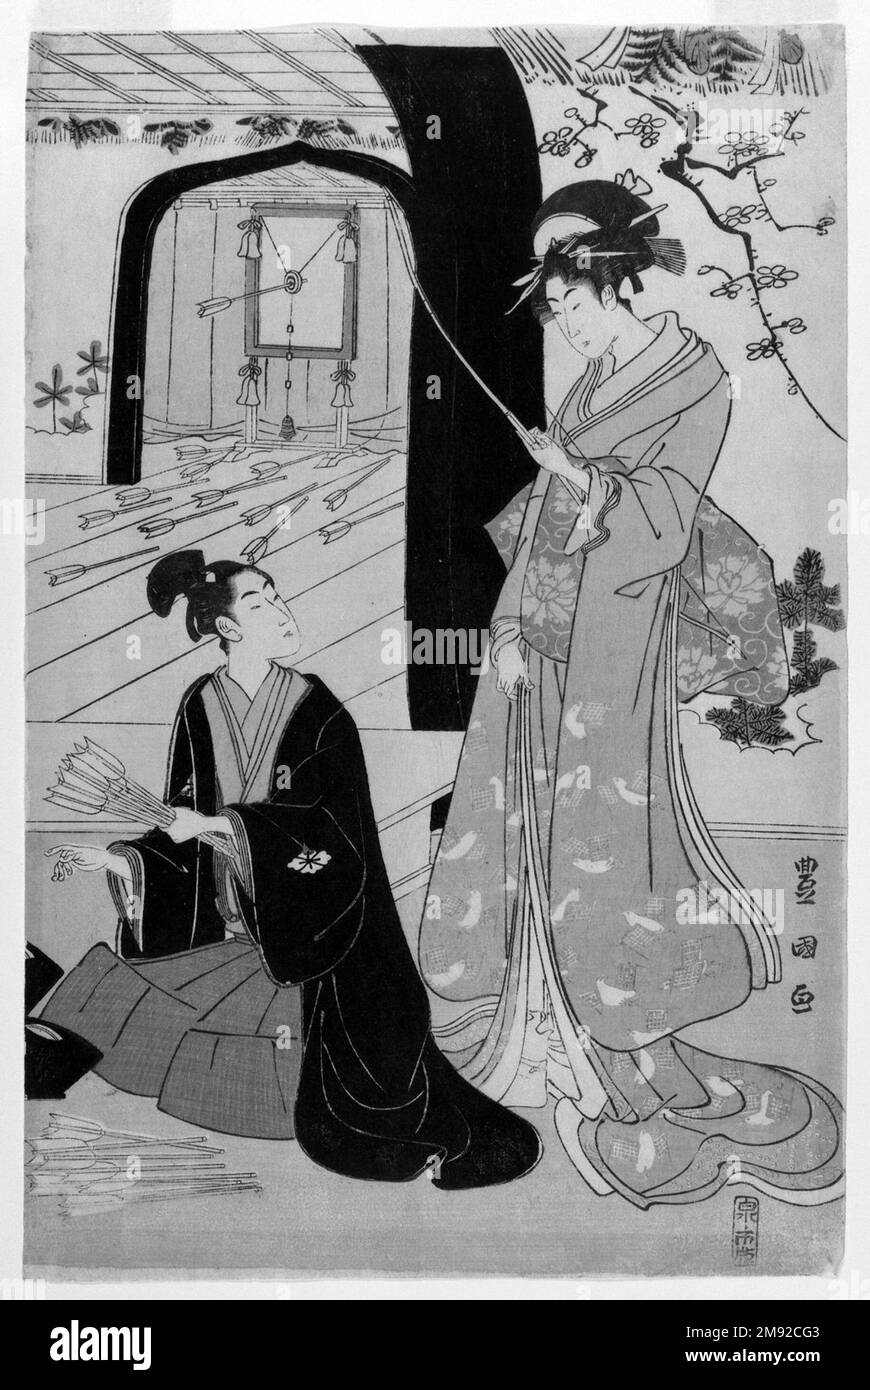 Giovani Samurai e presenze femminili che praticano la Tiro con l'Arco, metà di un Diptych Utagawa Toyokuni i (giapponese, 1769-1825). Giovani Samurai e prescieri femminili che praticano la Tiro con l'Arco, metà di un Dittico, ca. 1800. Diptych, stampa woodblock, 15 1/4 x 10 1/8" (38,7 x 25,7 cm). Oltre alle sue celebri stampe d'attore kabuki, Toyokuni eccelse a immagini di belle donne, incorporando il tipo di figura lunga e lithe che era entrato in voga con l'opera di Kitagawa Utamaro (1750-1806) e di Torii Kiyonaga (1752-1815) nei decenni precedenti. Il tiro con l'arco era un'attività raffinata associata al samurai warr Foto Stock